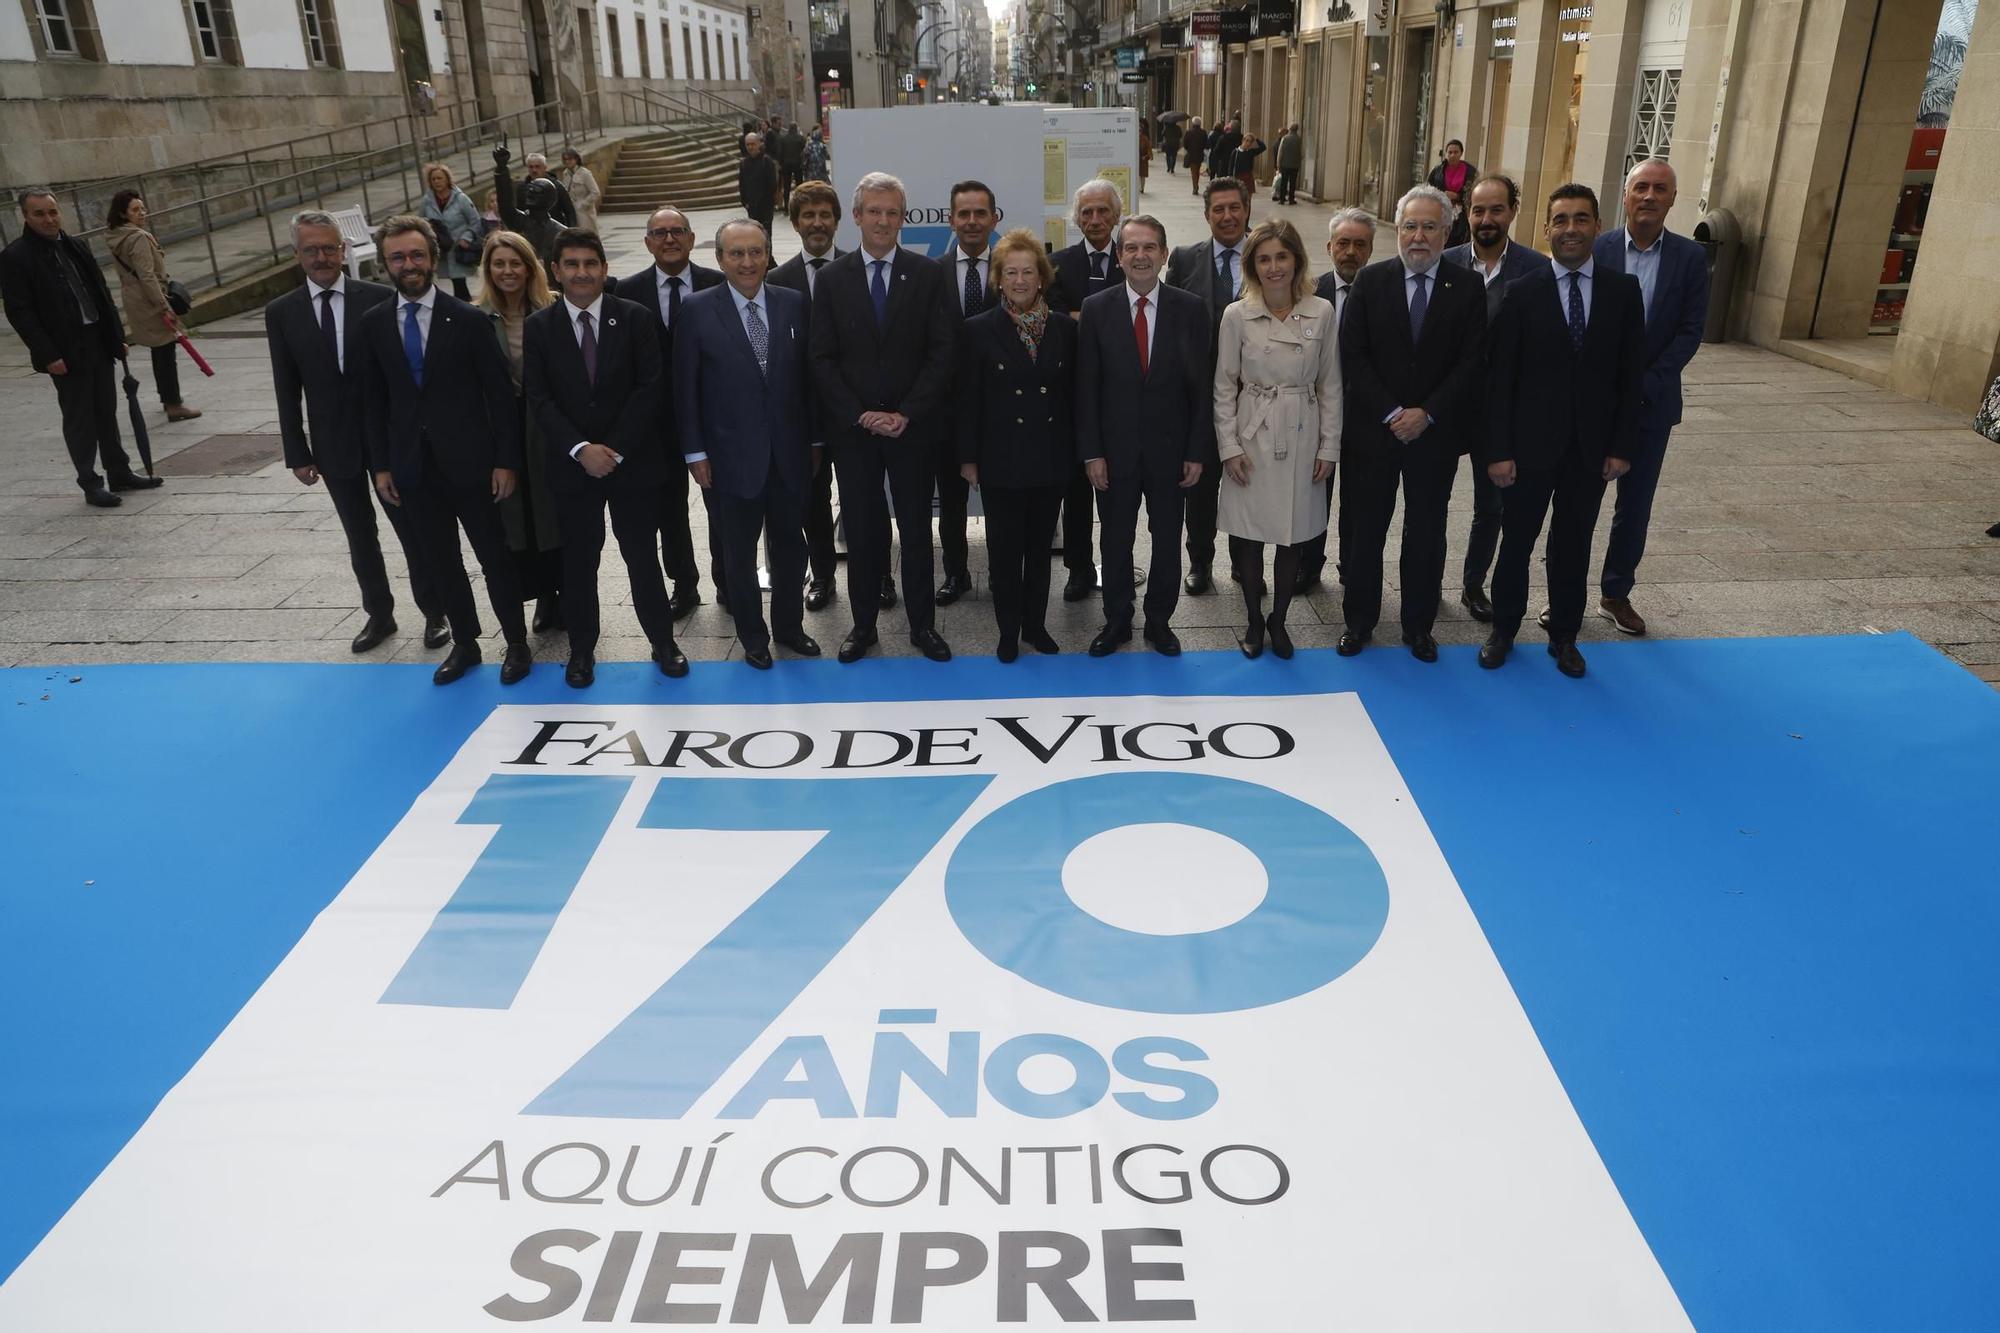 ¡Extra, extra!: Faro de Vigo muestra sus portadas más relevantes en sus 170 años de historia